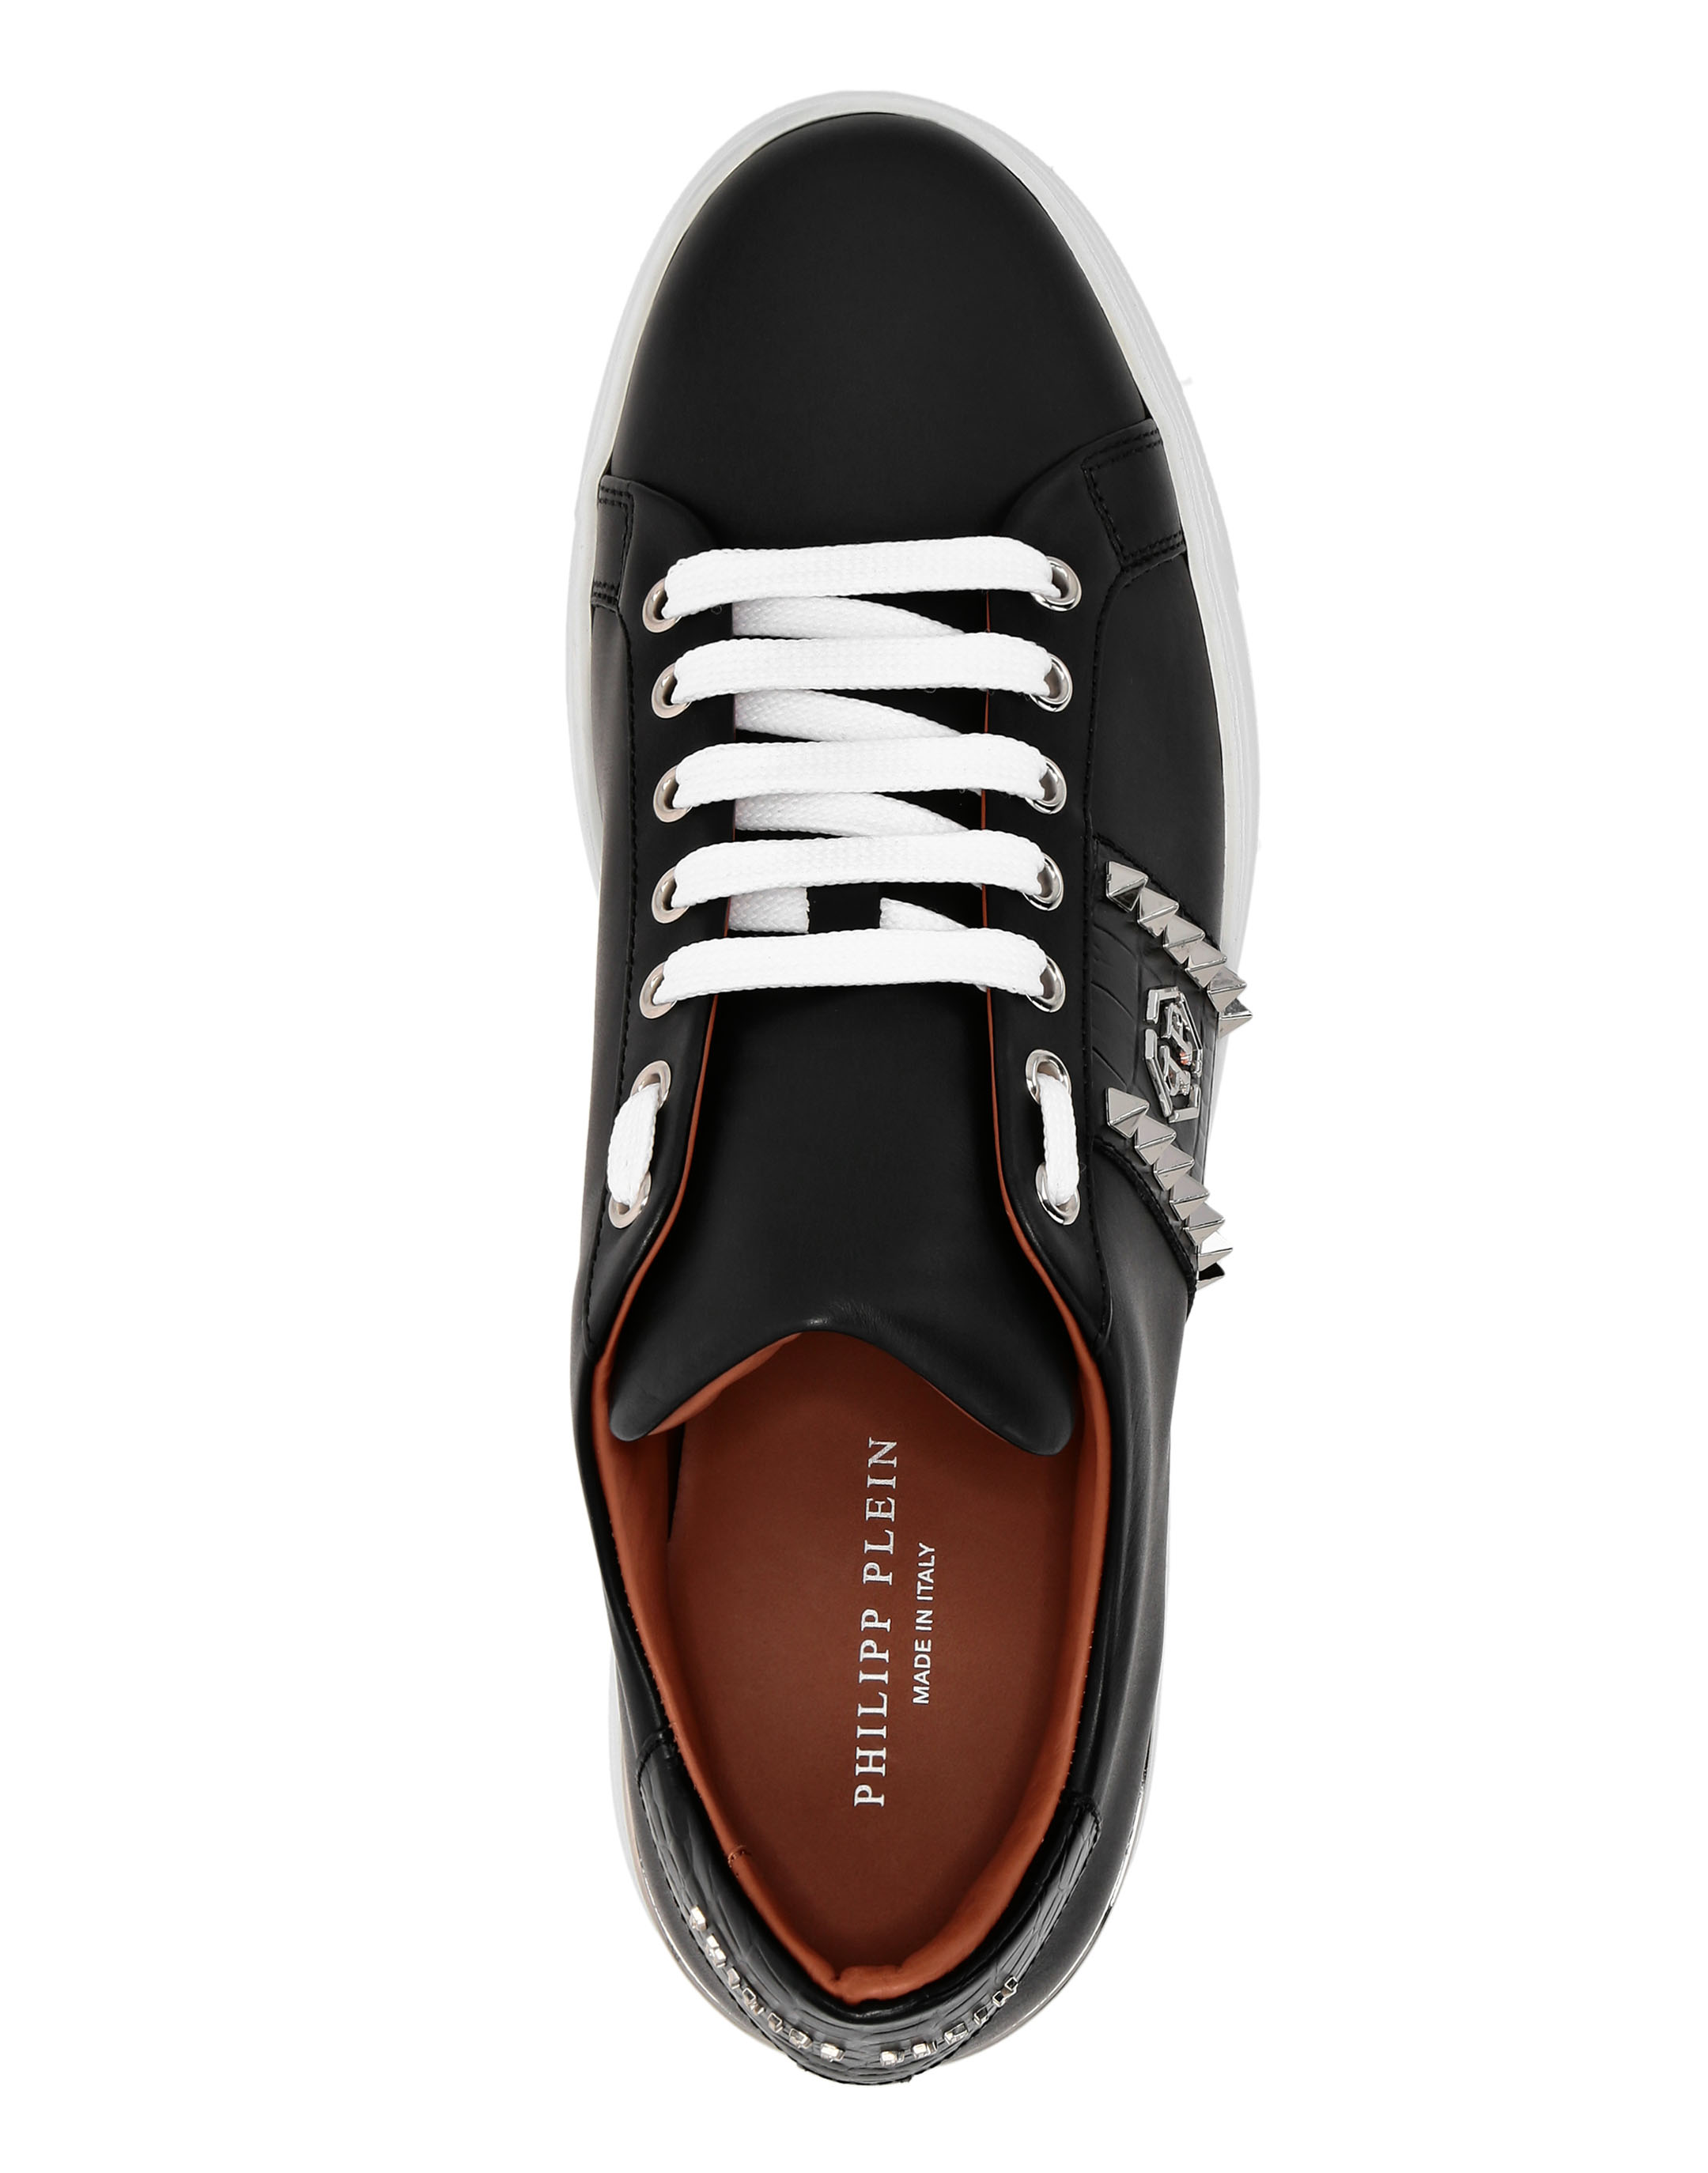 Leather Lo-Top Sneakers The Plein Original TM | Philipp Plein Outlet